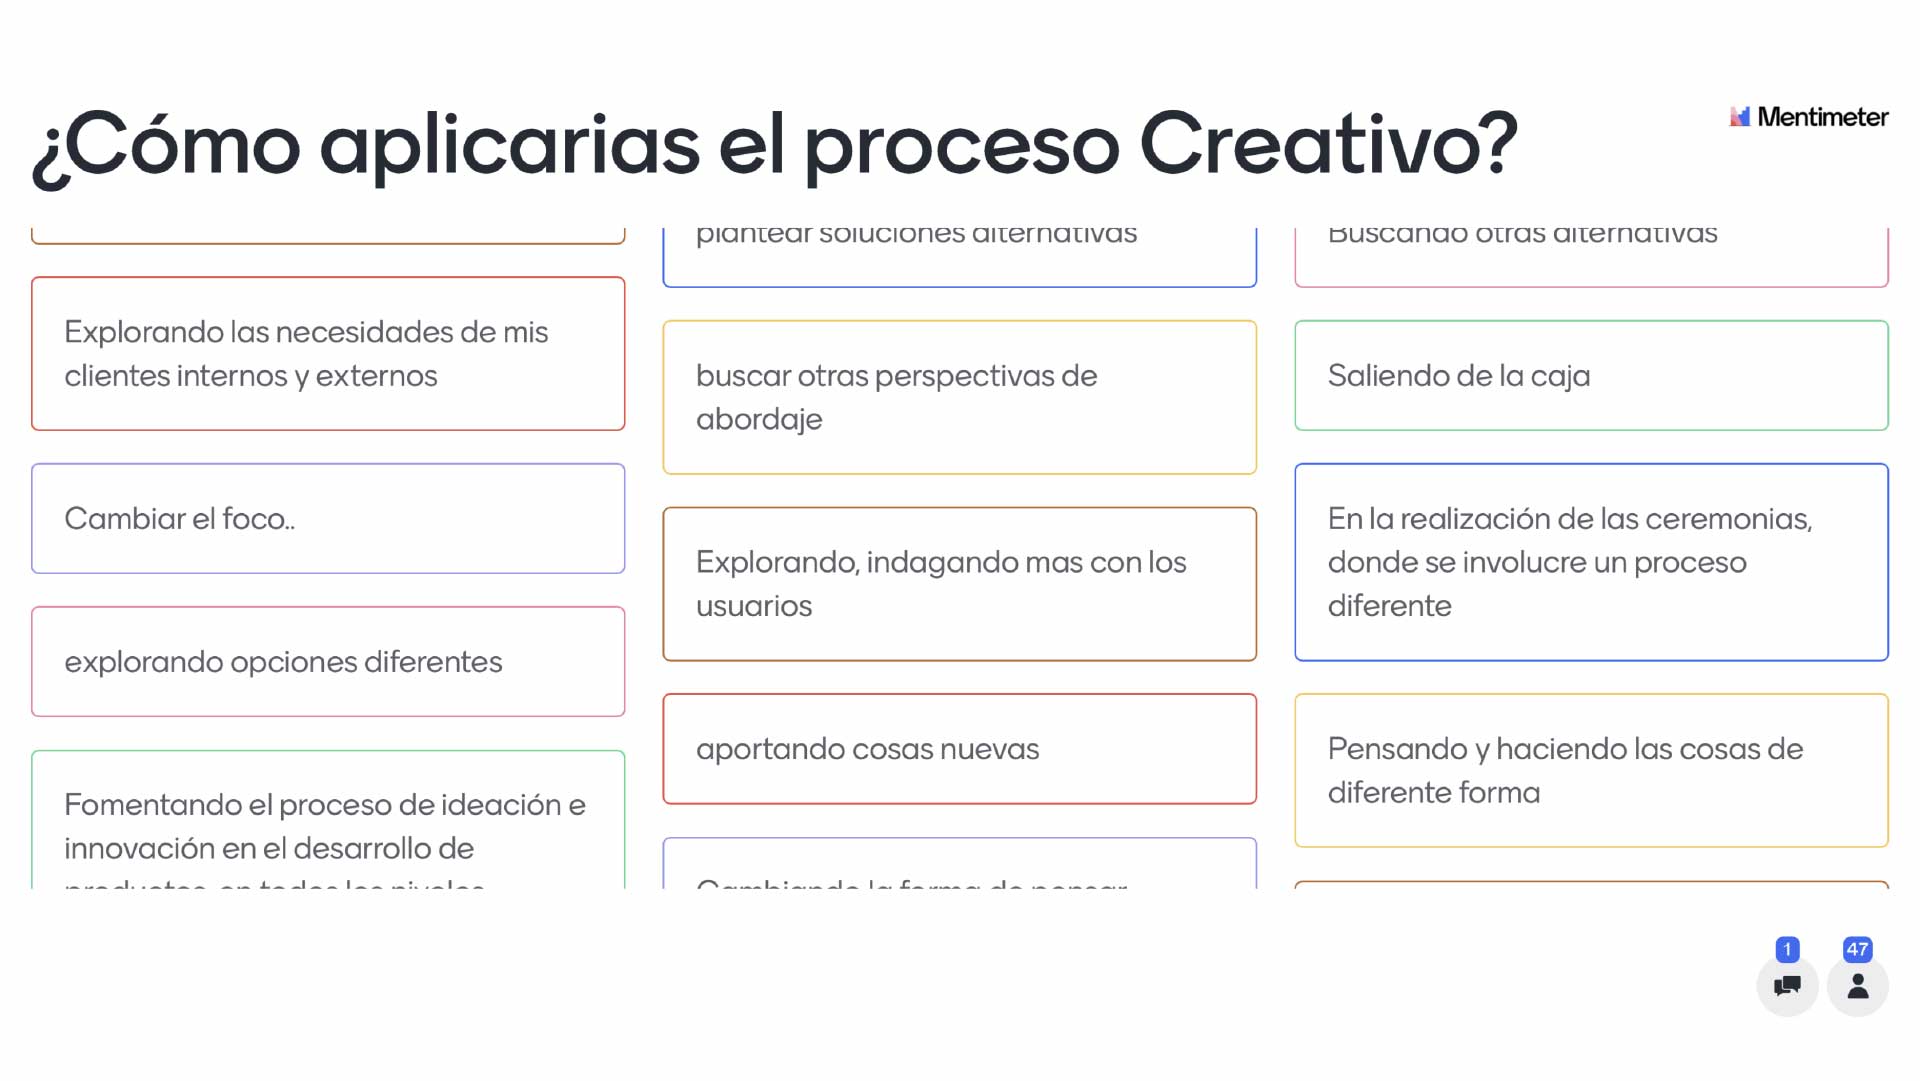 ¿Cómo aplicarias el proceso Creativo?